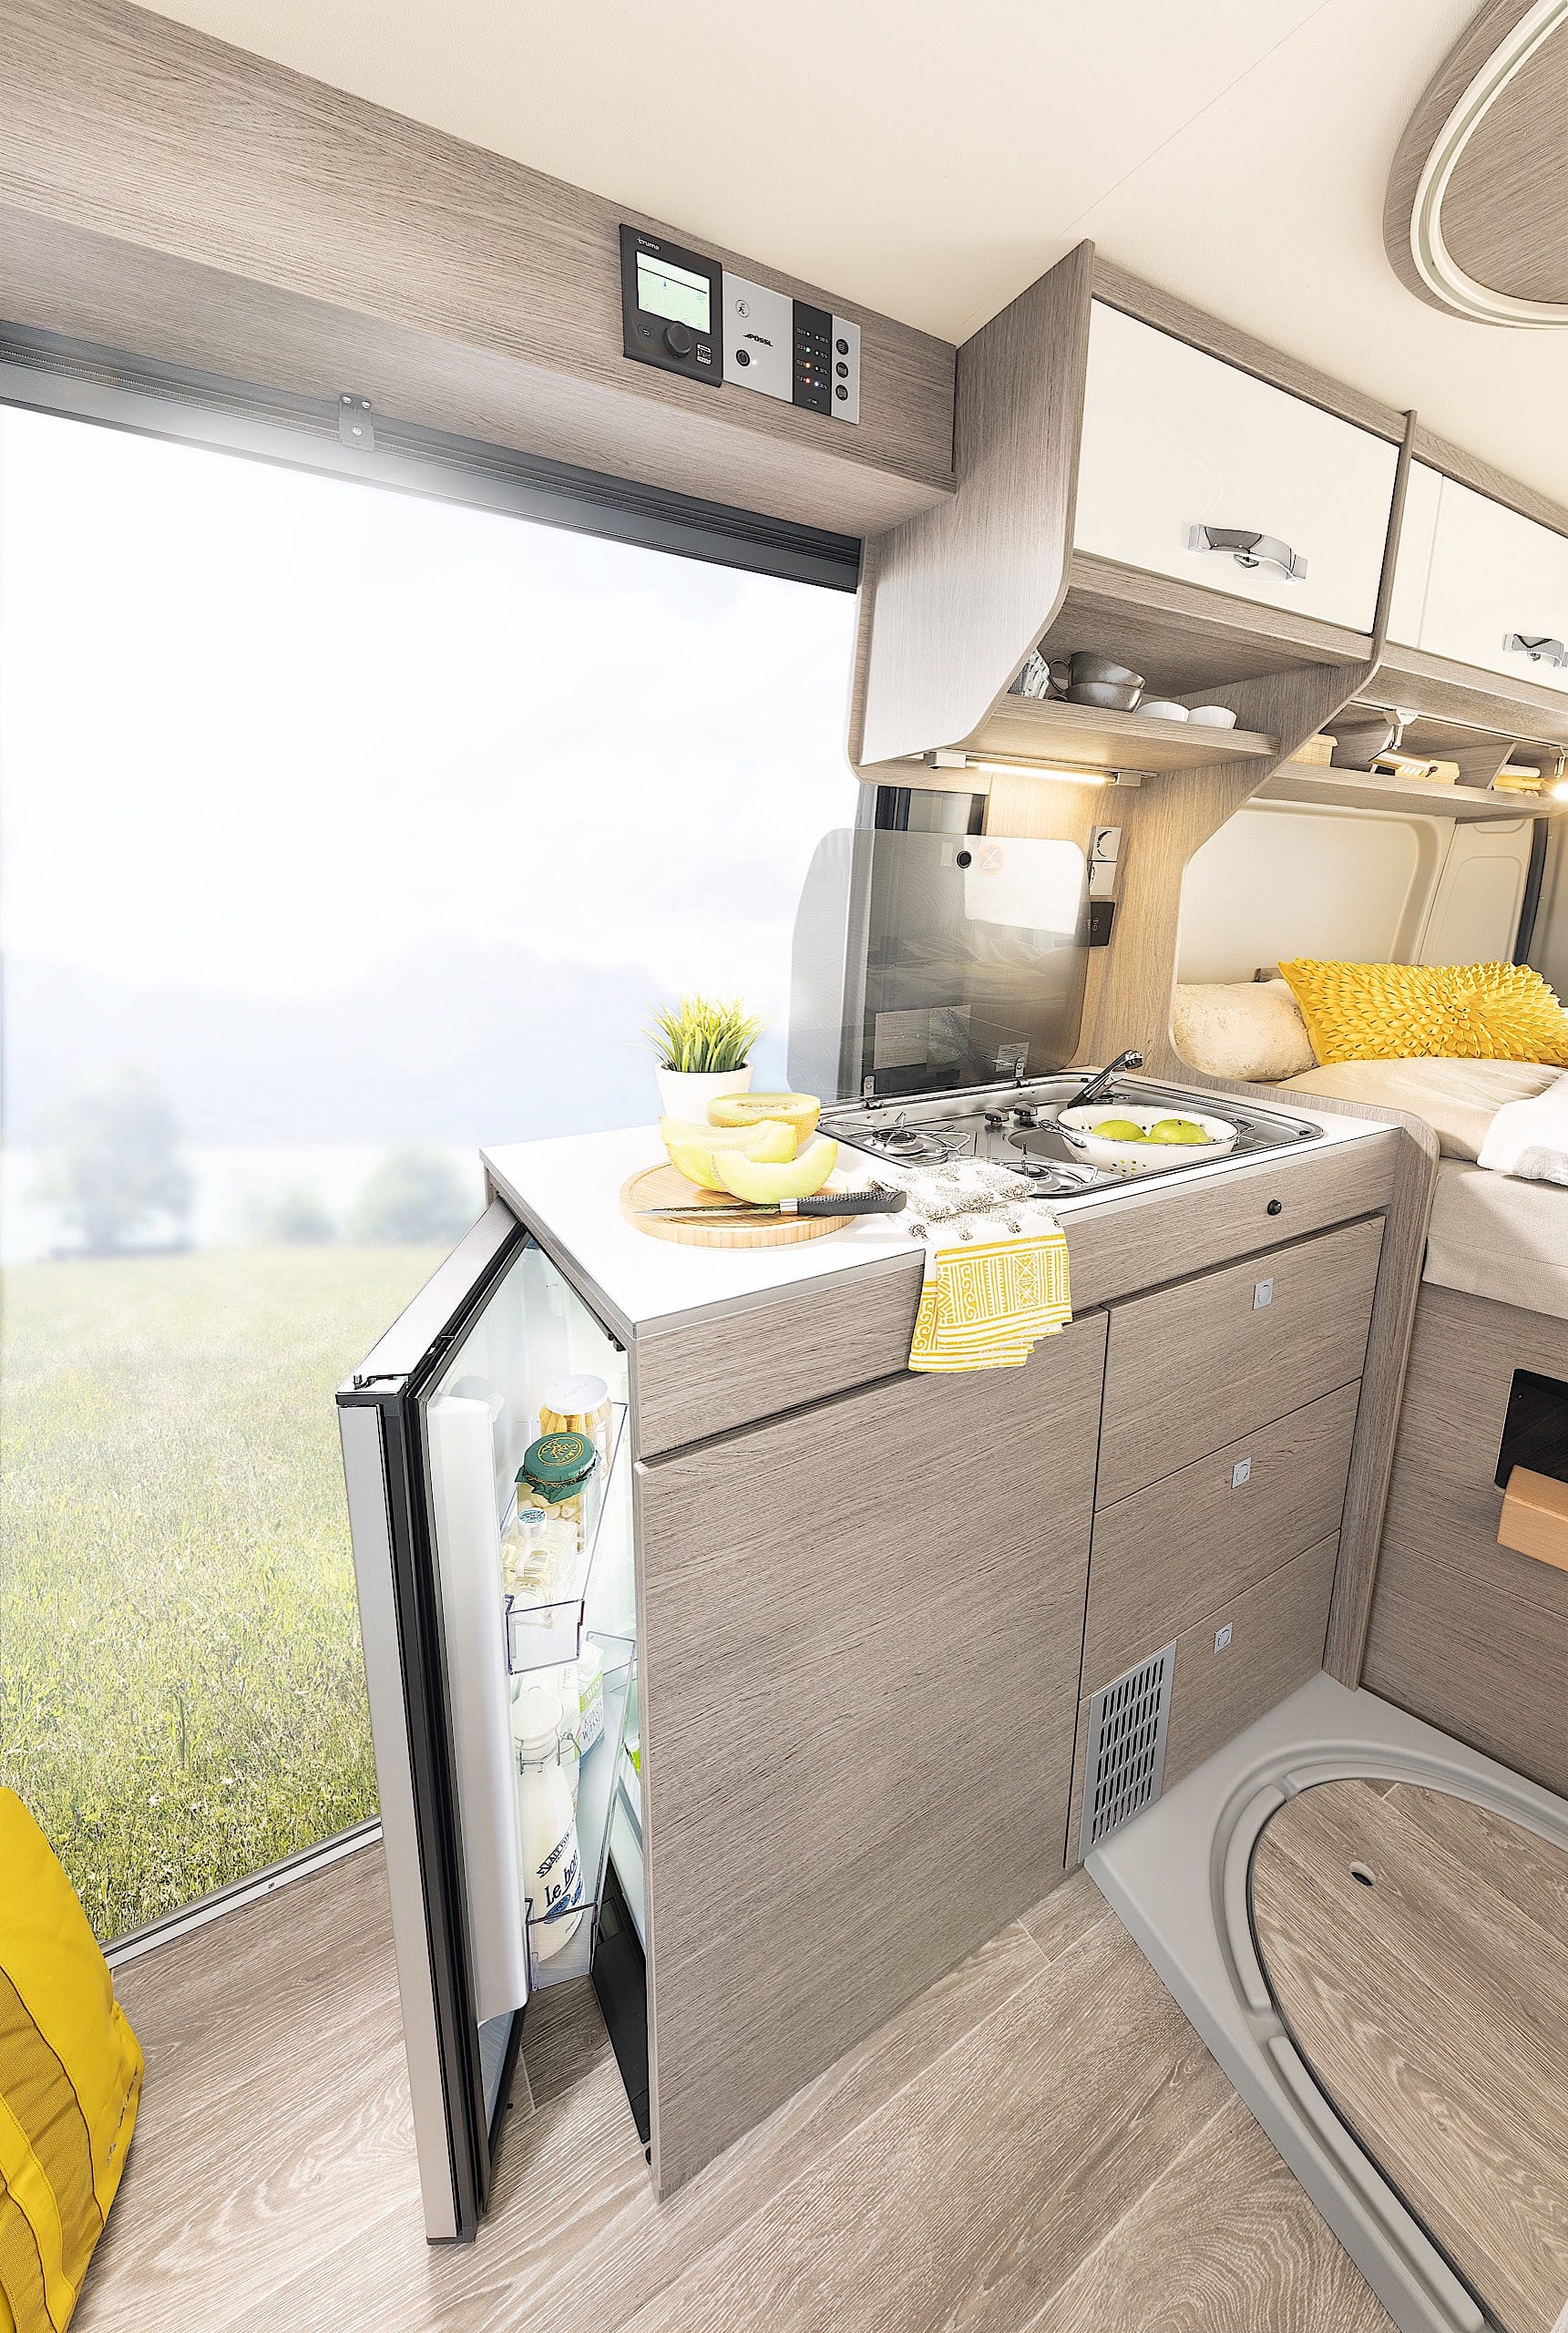 Pössl Kastenwagen, Küche mit robuster Oberfläche der Arbeitsfläche, Kühlschrank mit Frostfach